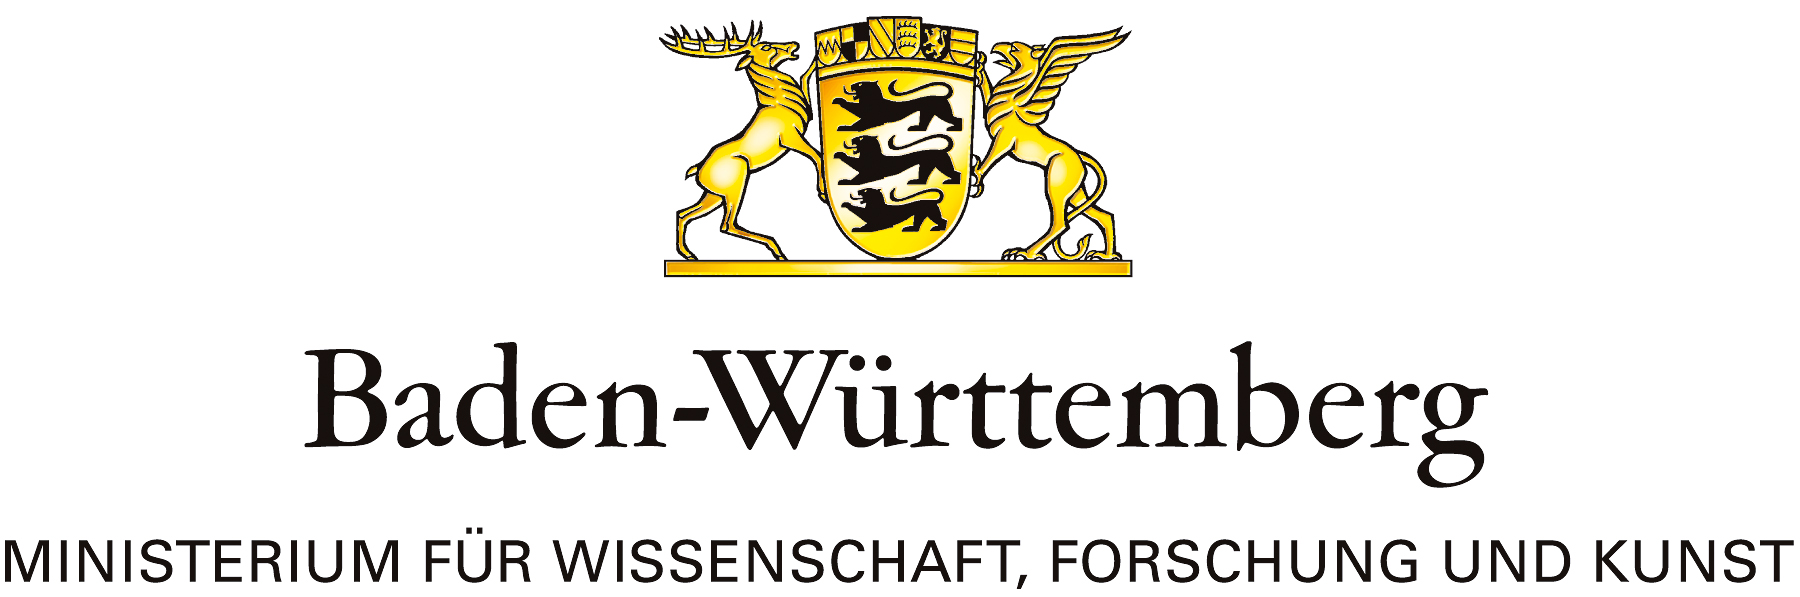 Baden Wuerttember Ministerium fuer Wissenschaft Forschung und Kunst